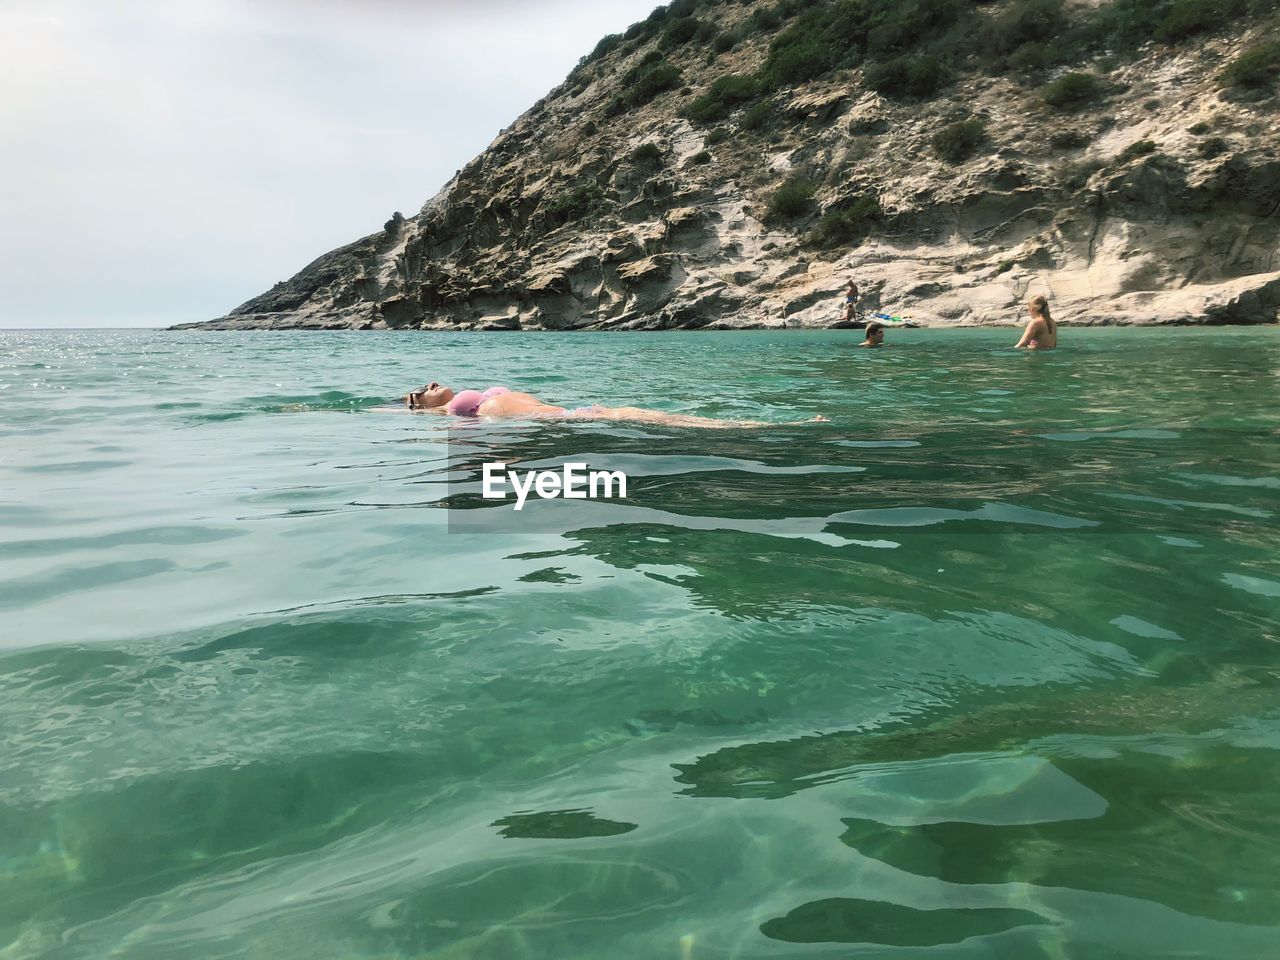 People swimming in sea against rocks